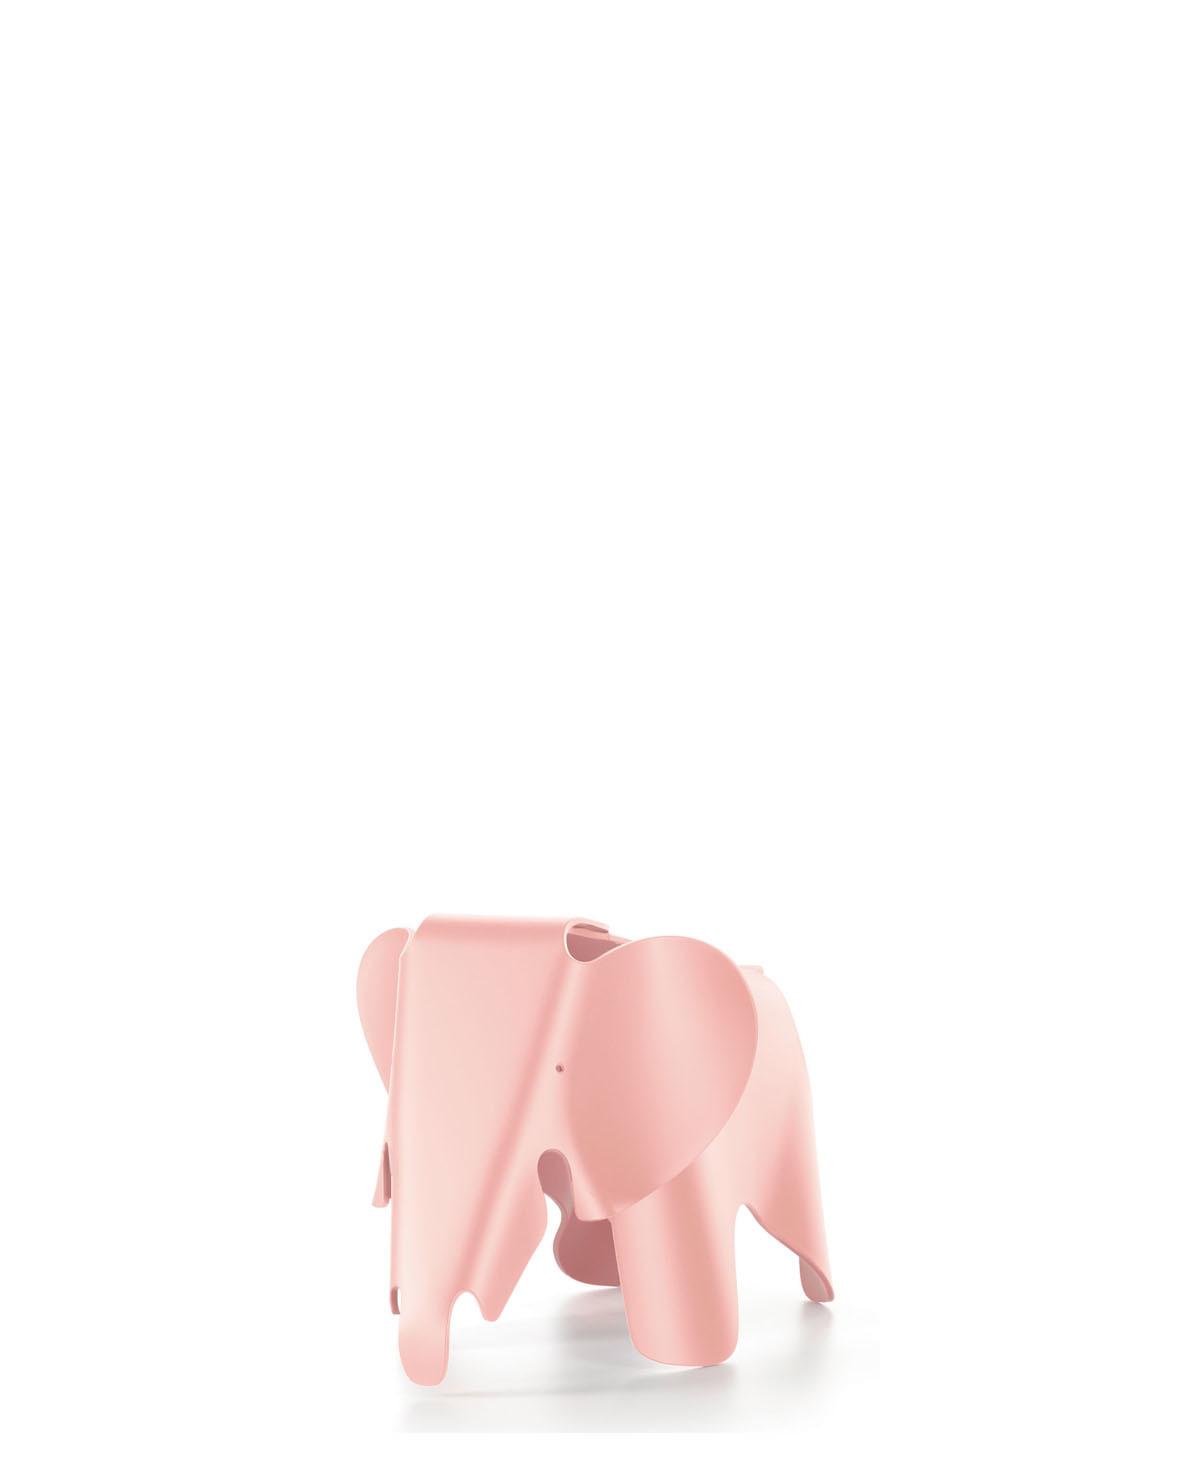 Eames Elephant klein One Size